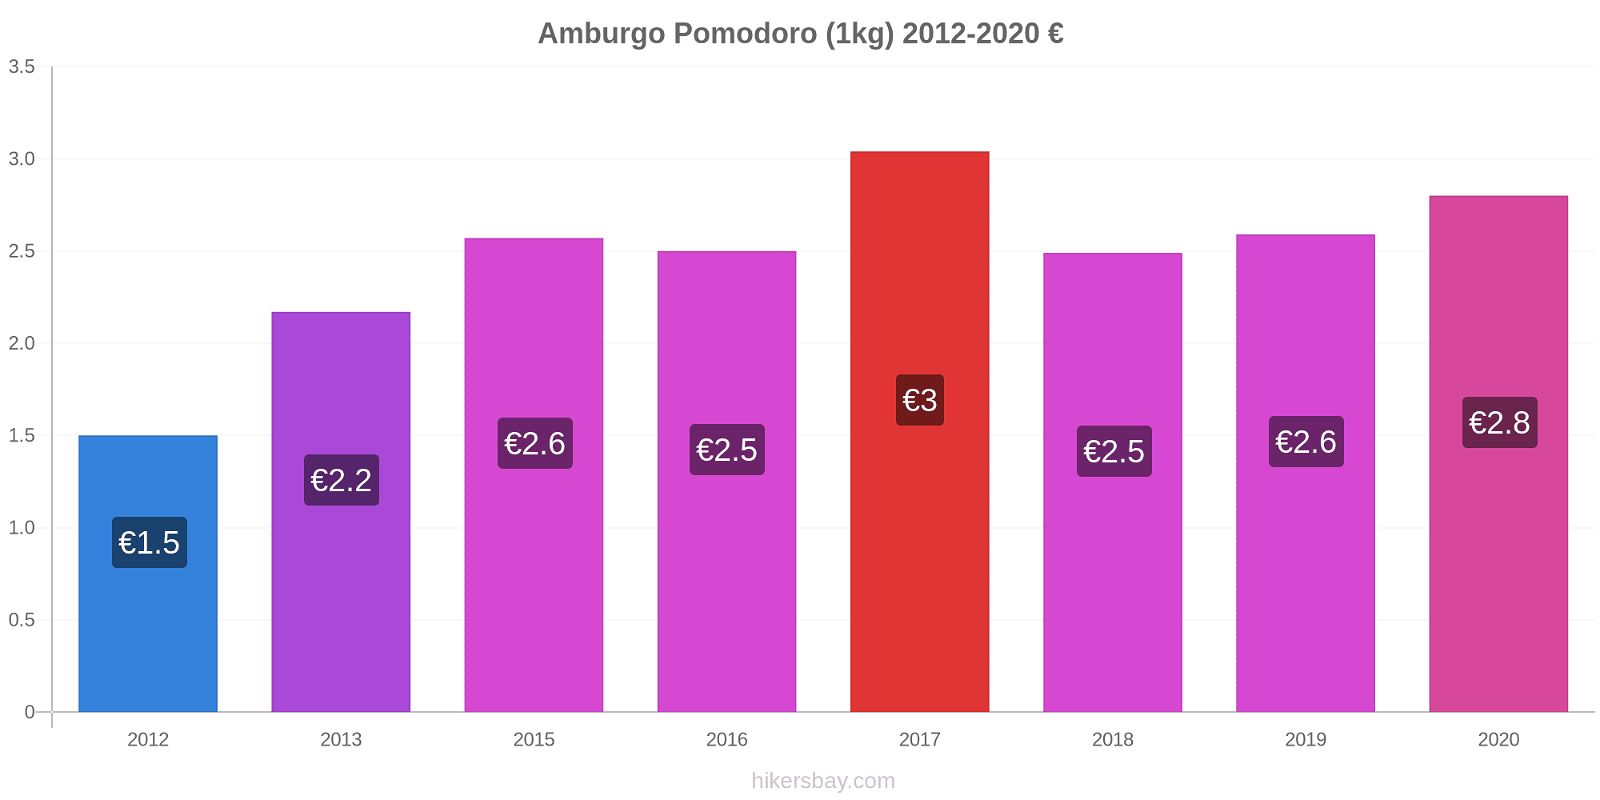 Amburgo variazioni di prezzo Pomodoro (1kg) hikersbay.com